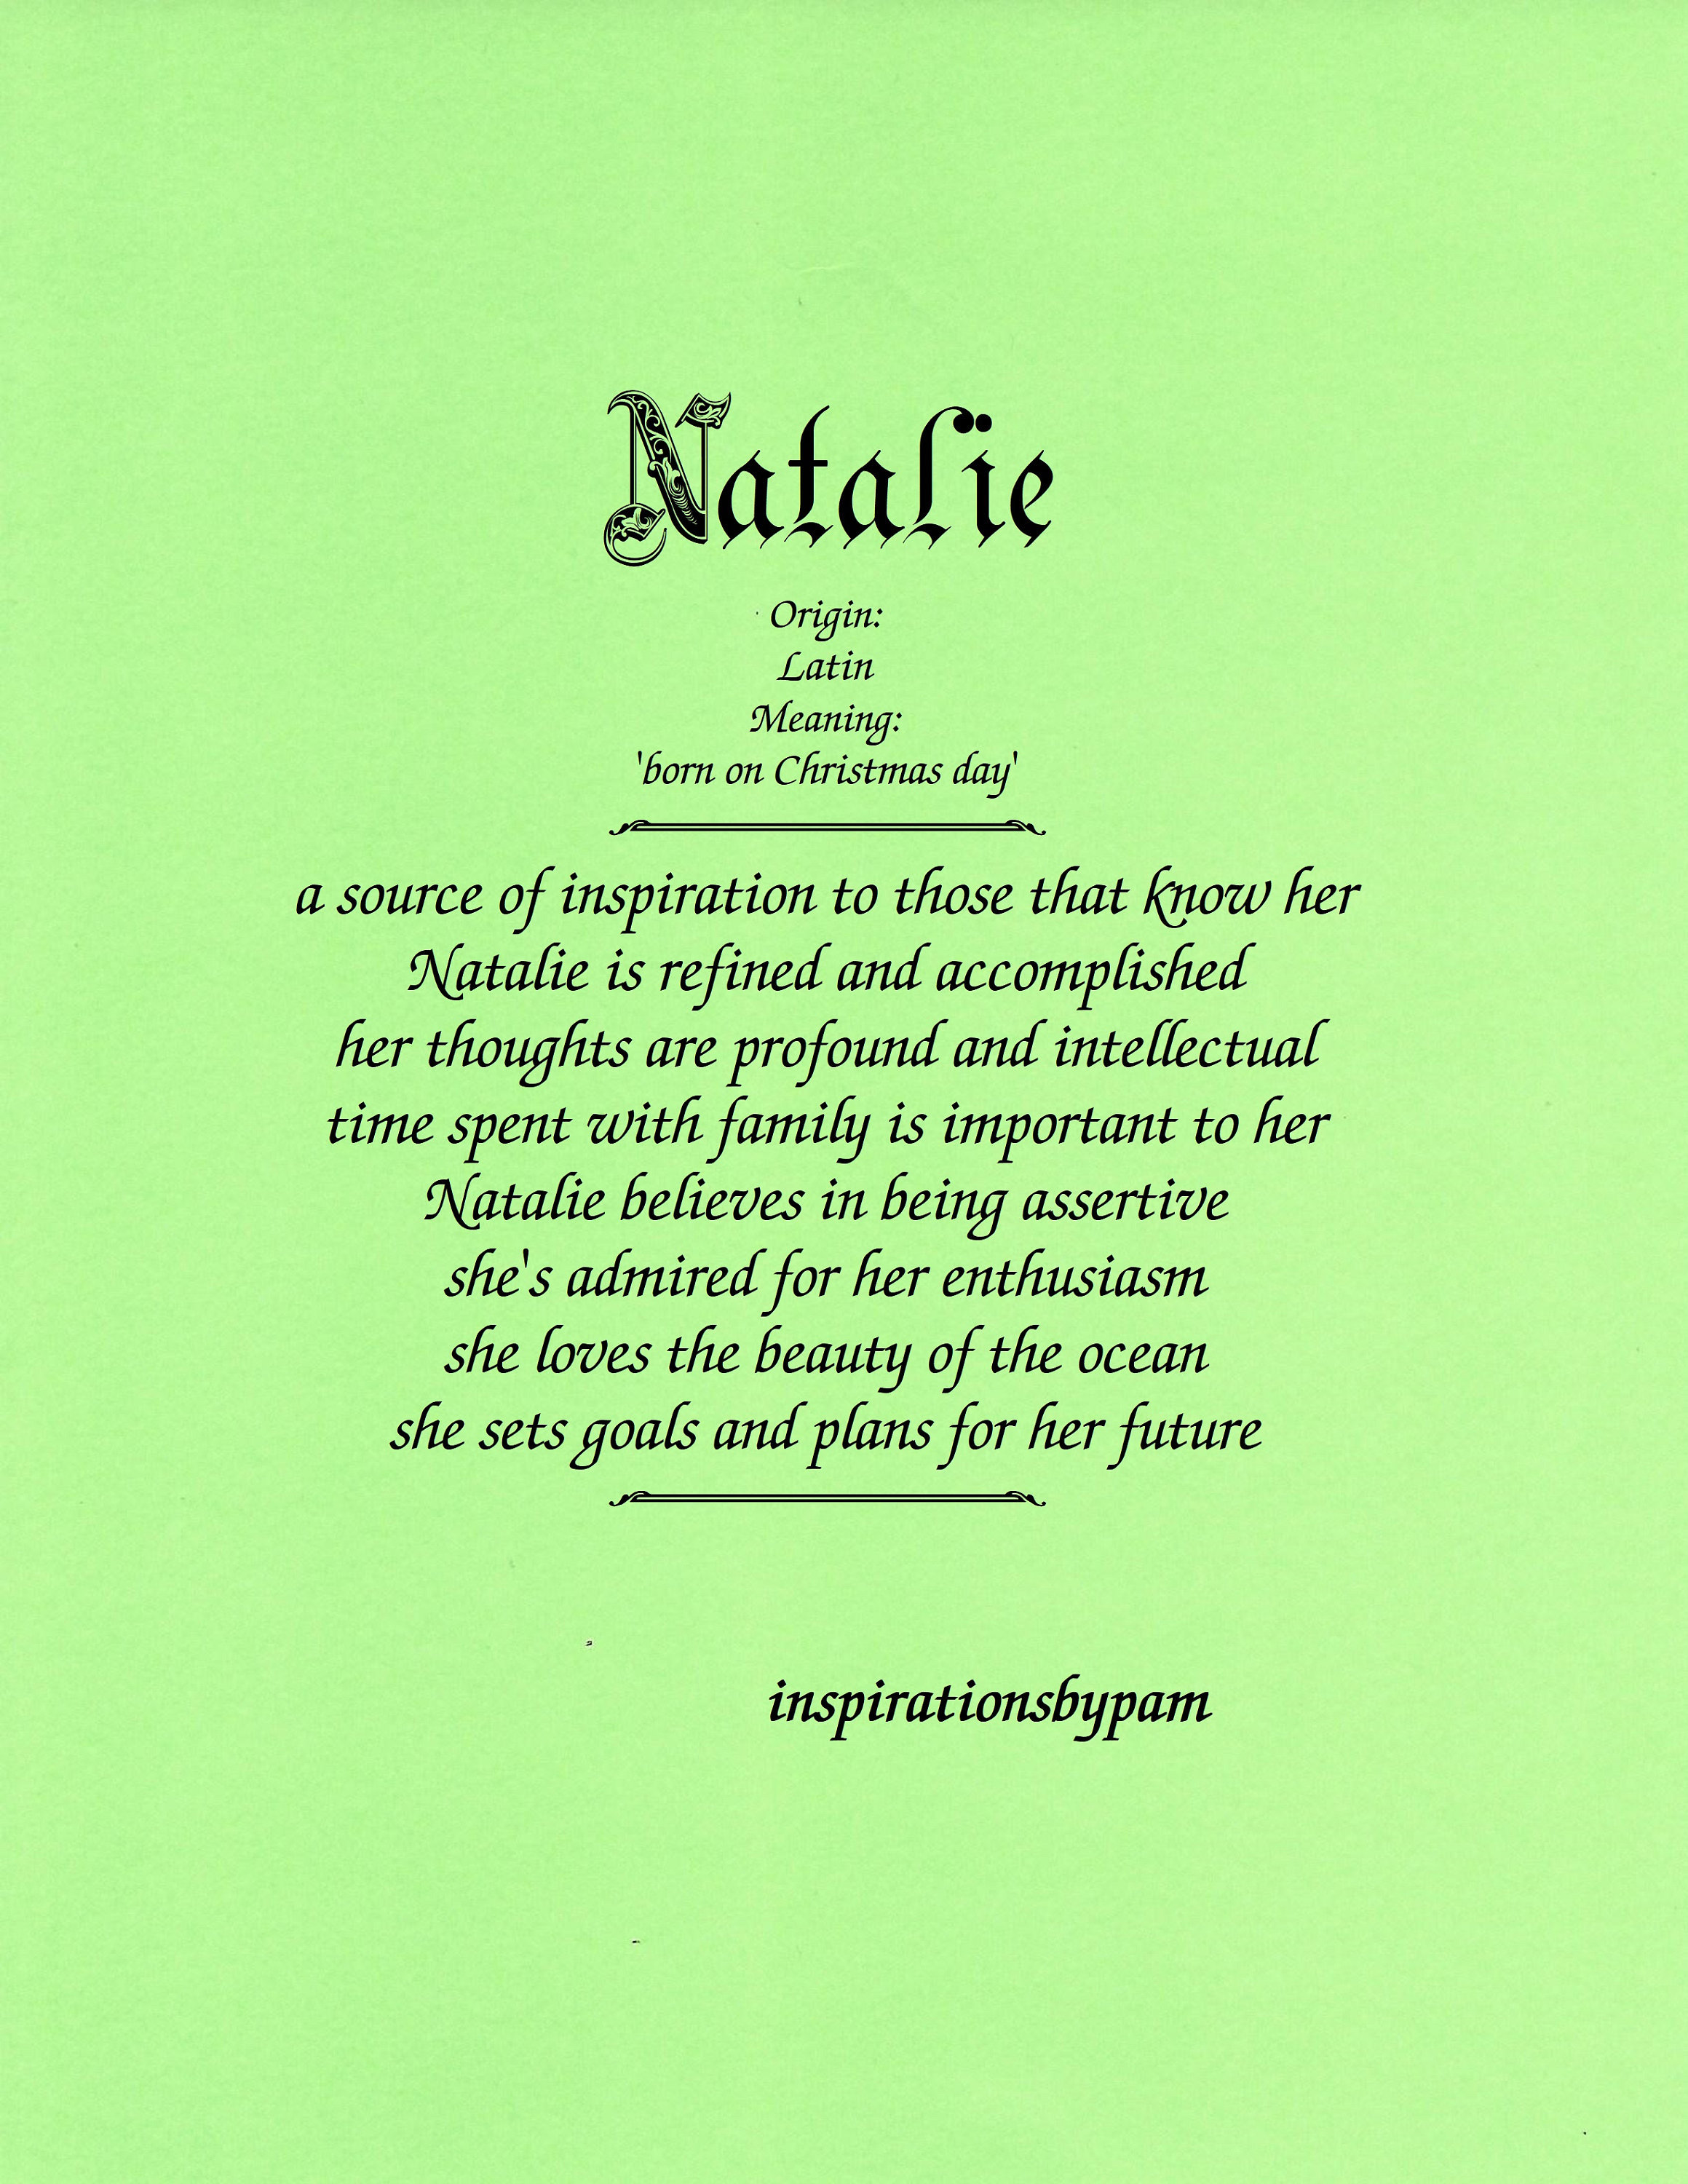 Natalie, một người mẫu trẻ đầy xu hướng và ấn tượng, luôn thu hút sự chú ý của người hâm mộ. Xem thêm hình ảnh của cô ấy để nắm bắt được phong cách thời trang đang hot nhất hiện nay.